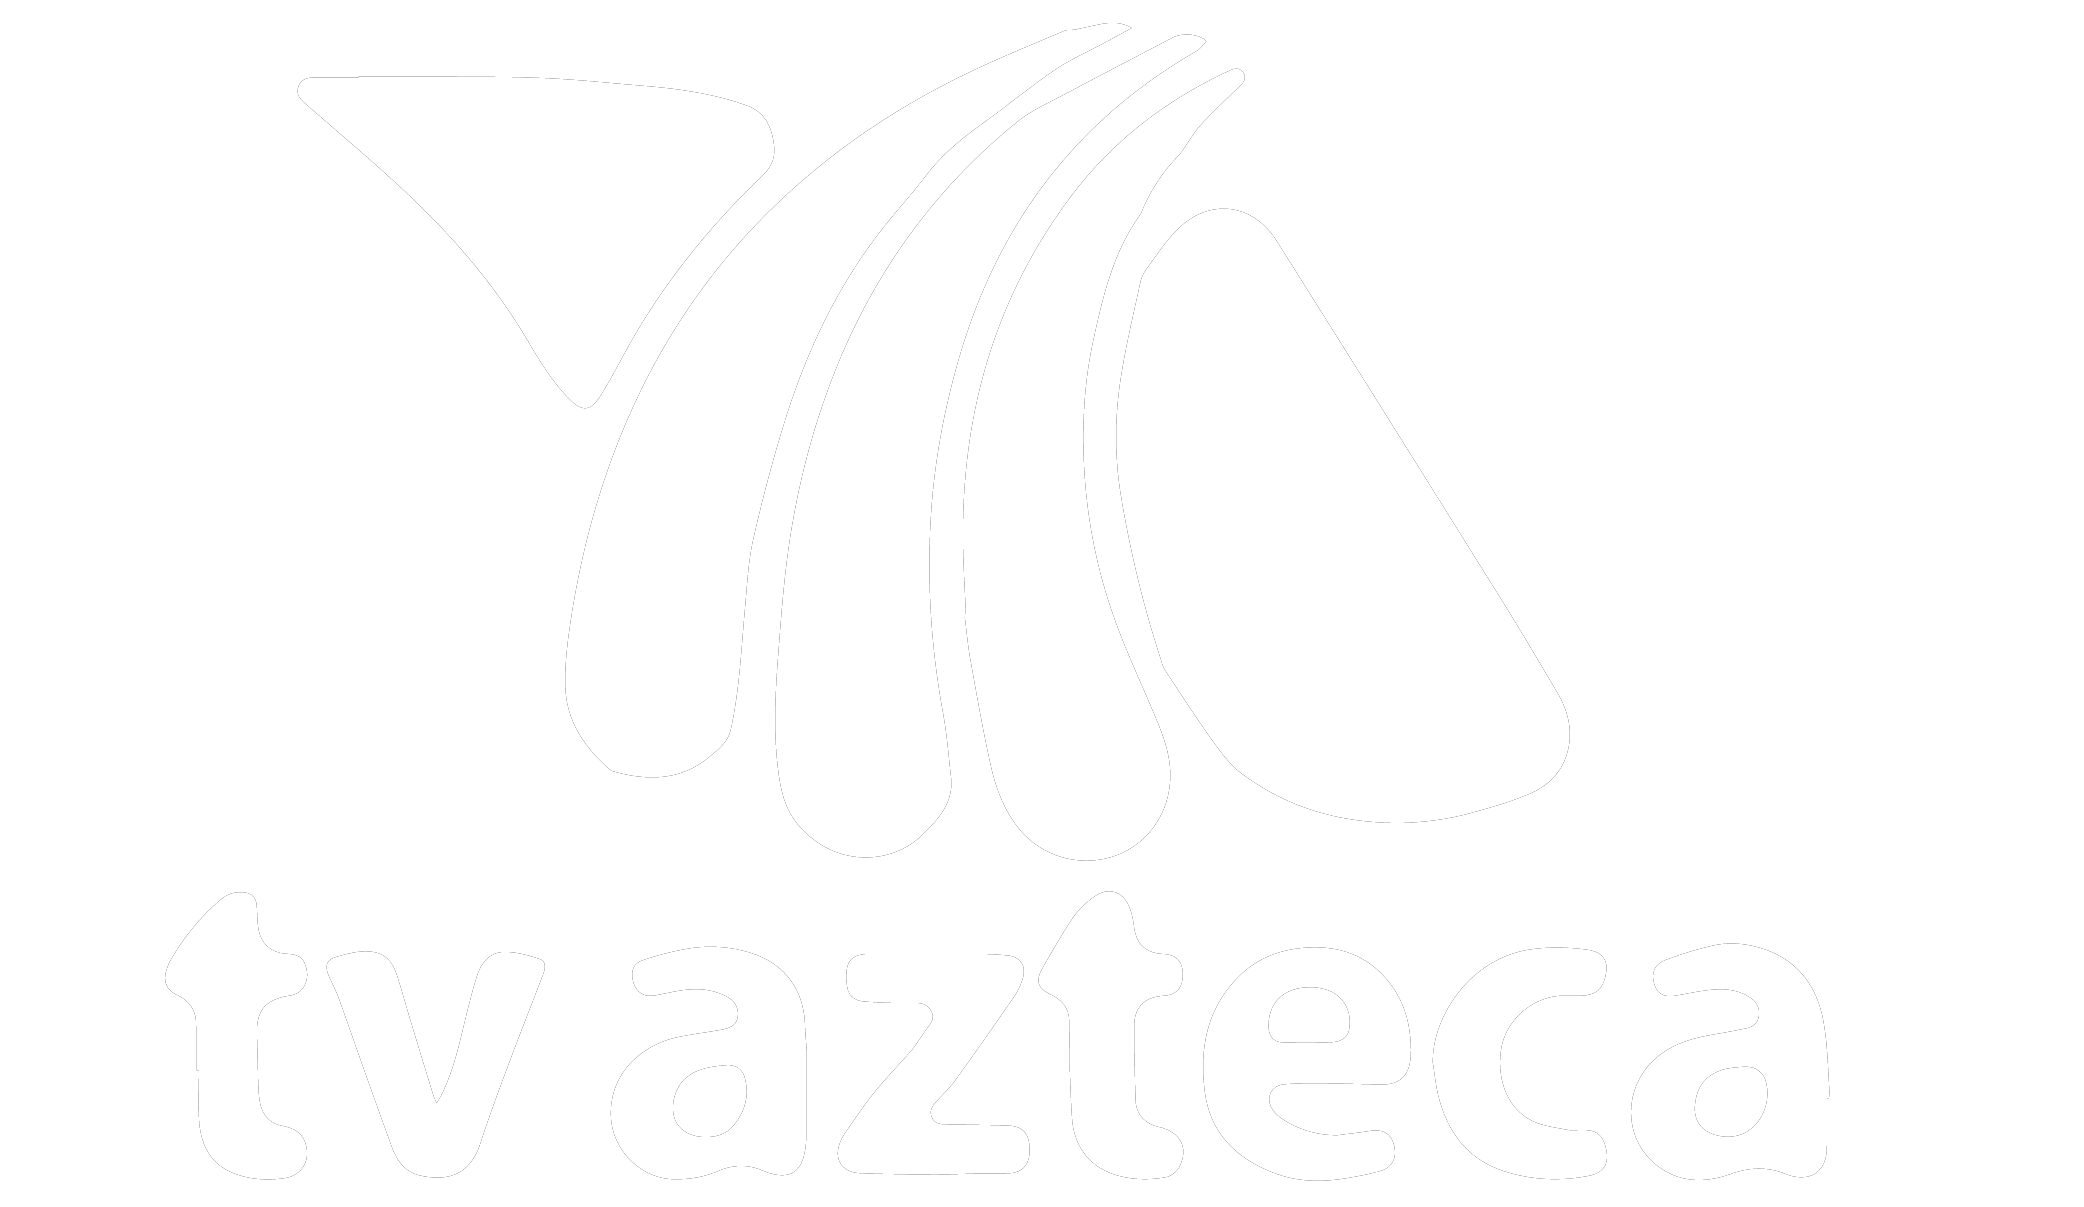 TV-AZTECA.png